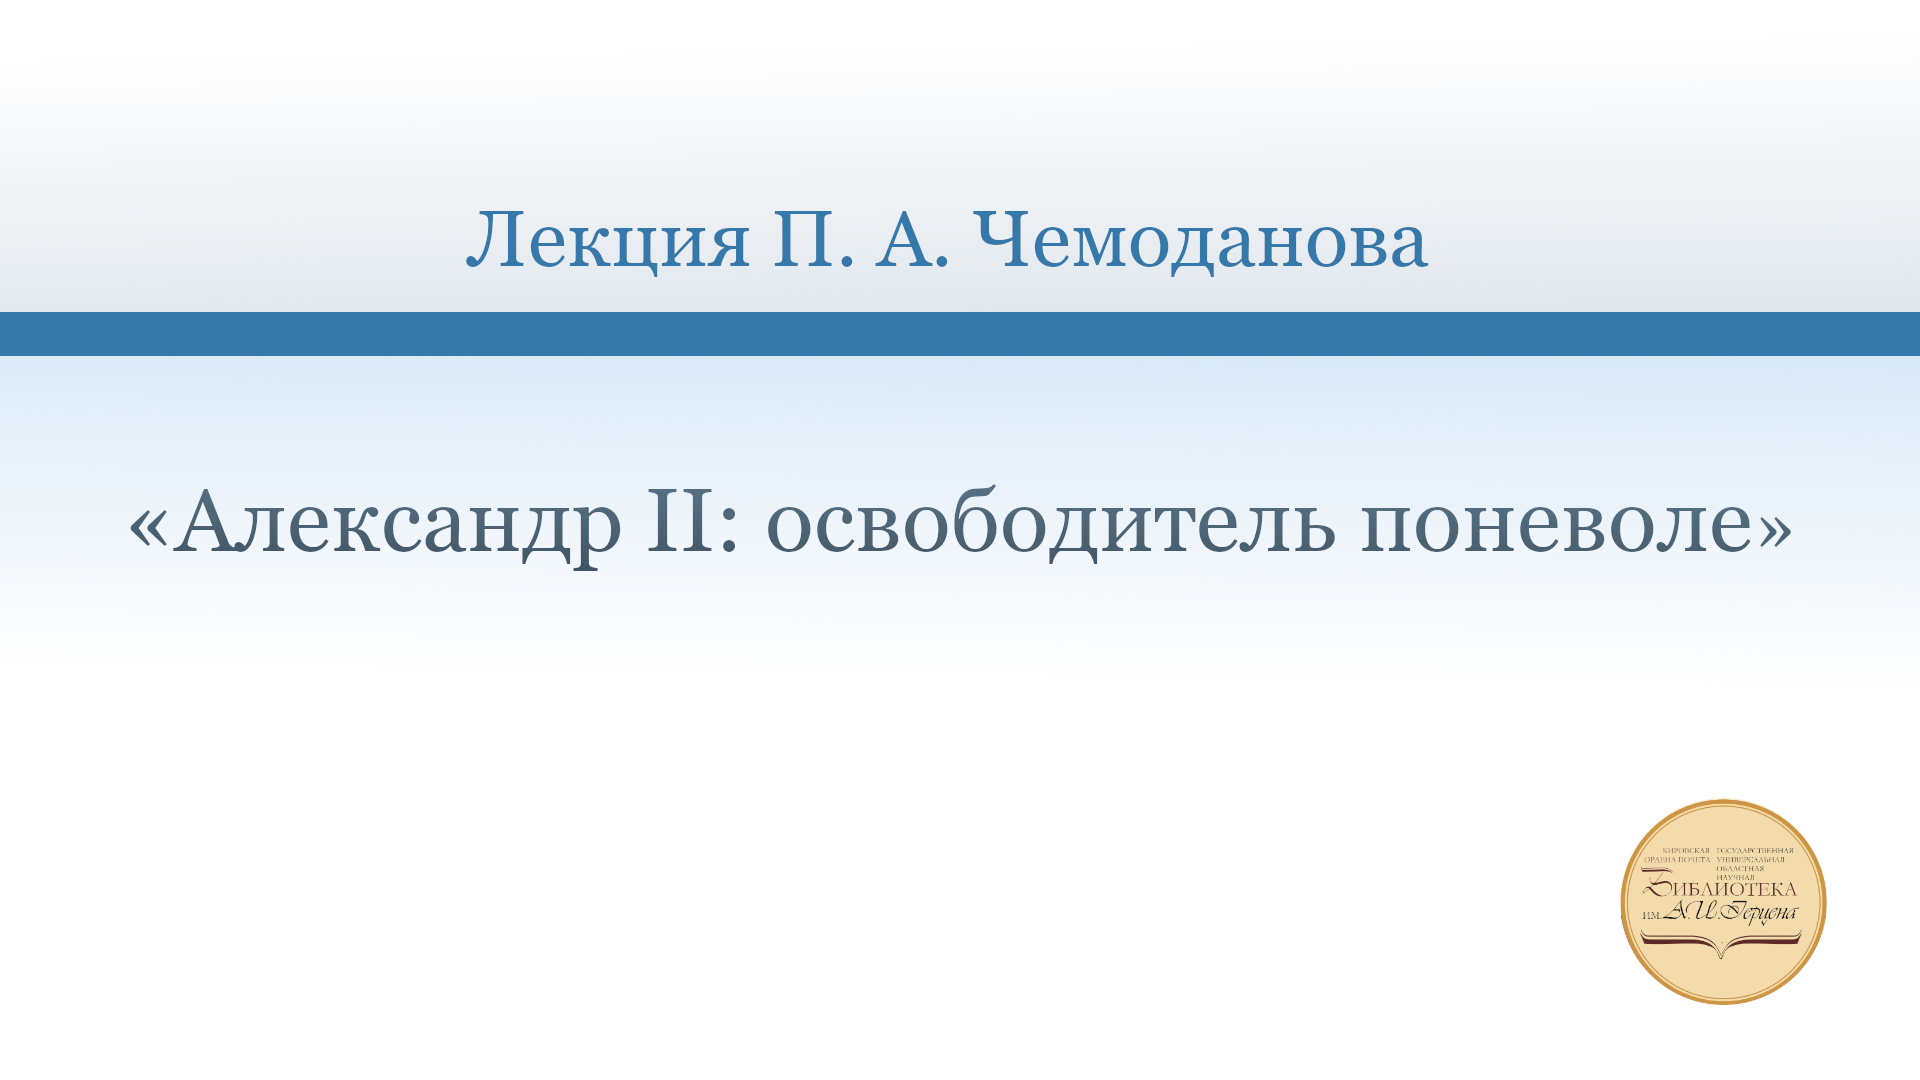 «Александр II: освободитель поневоле». Лекция П.А. Чемоданова